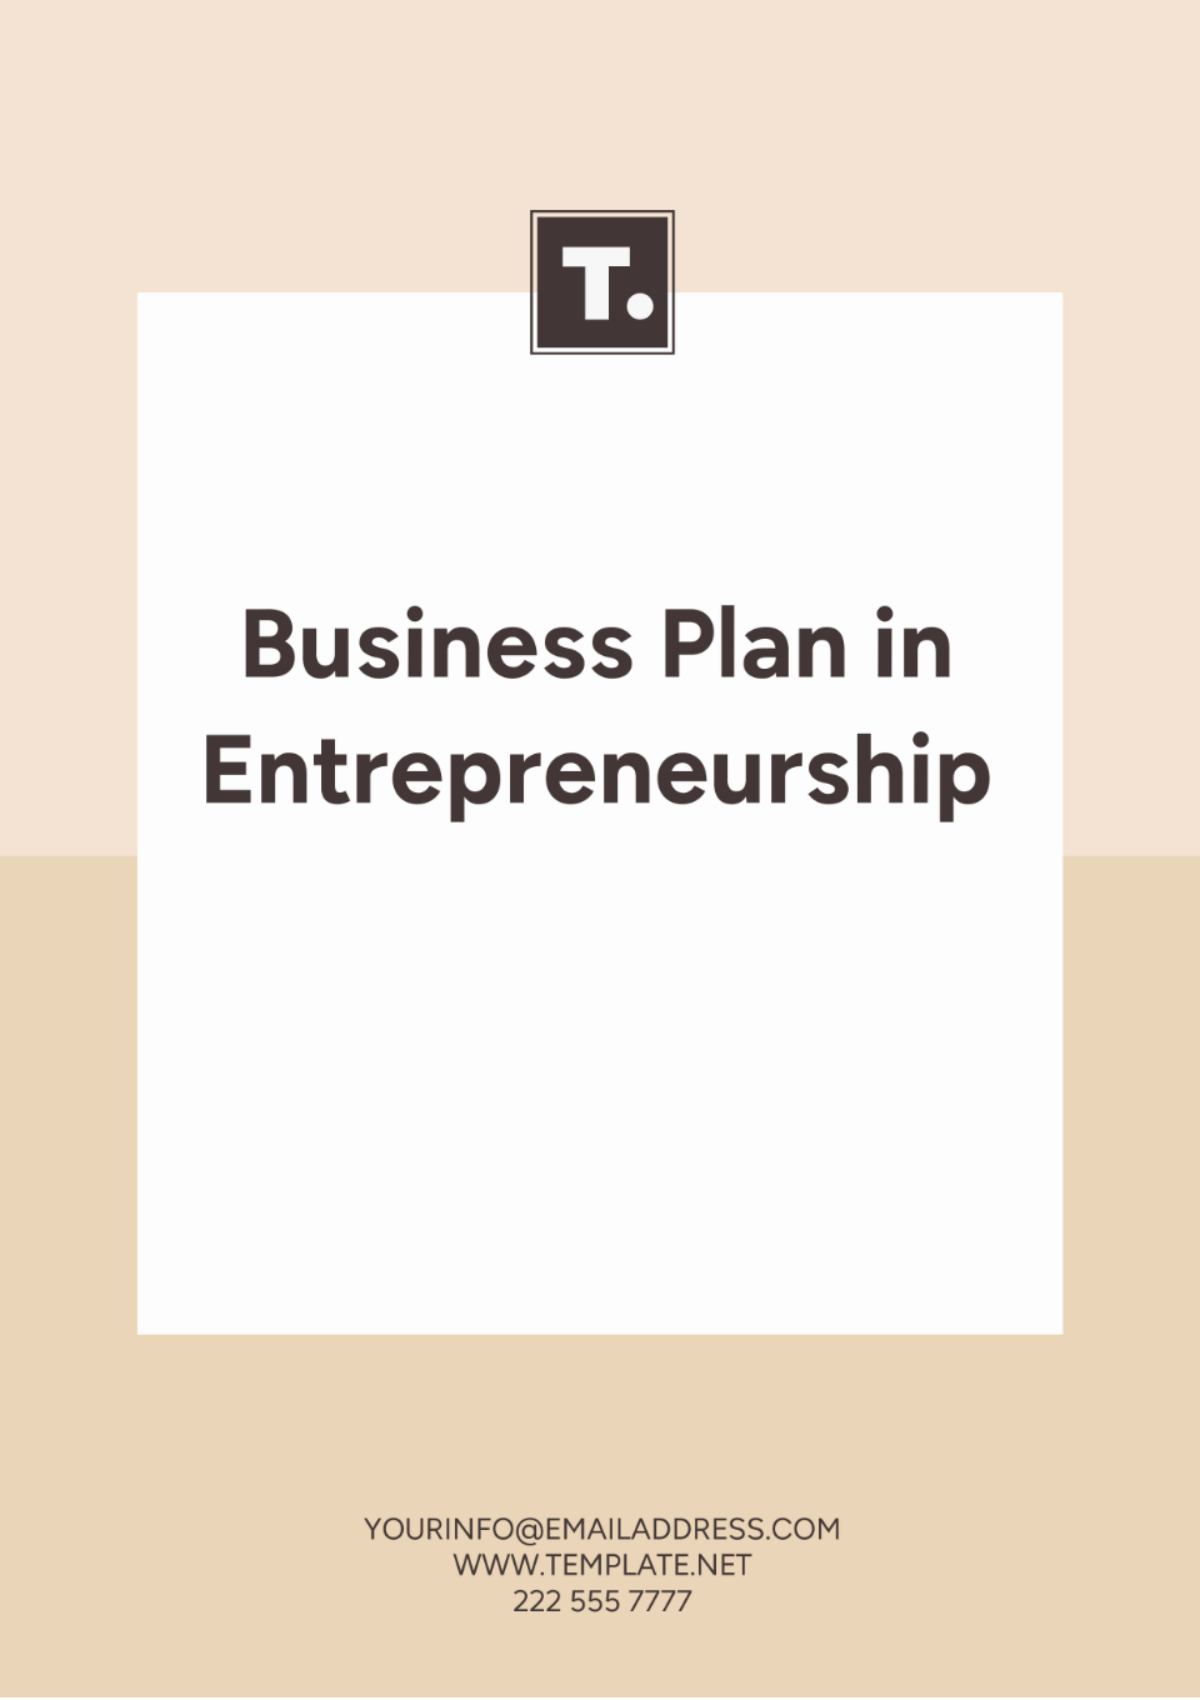 Business Plan in Entrepreneurship Template